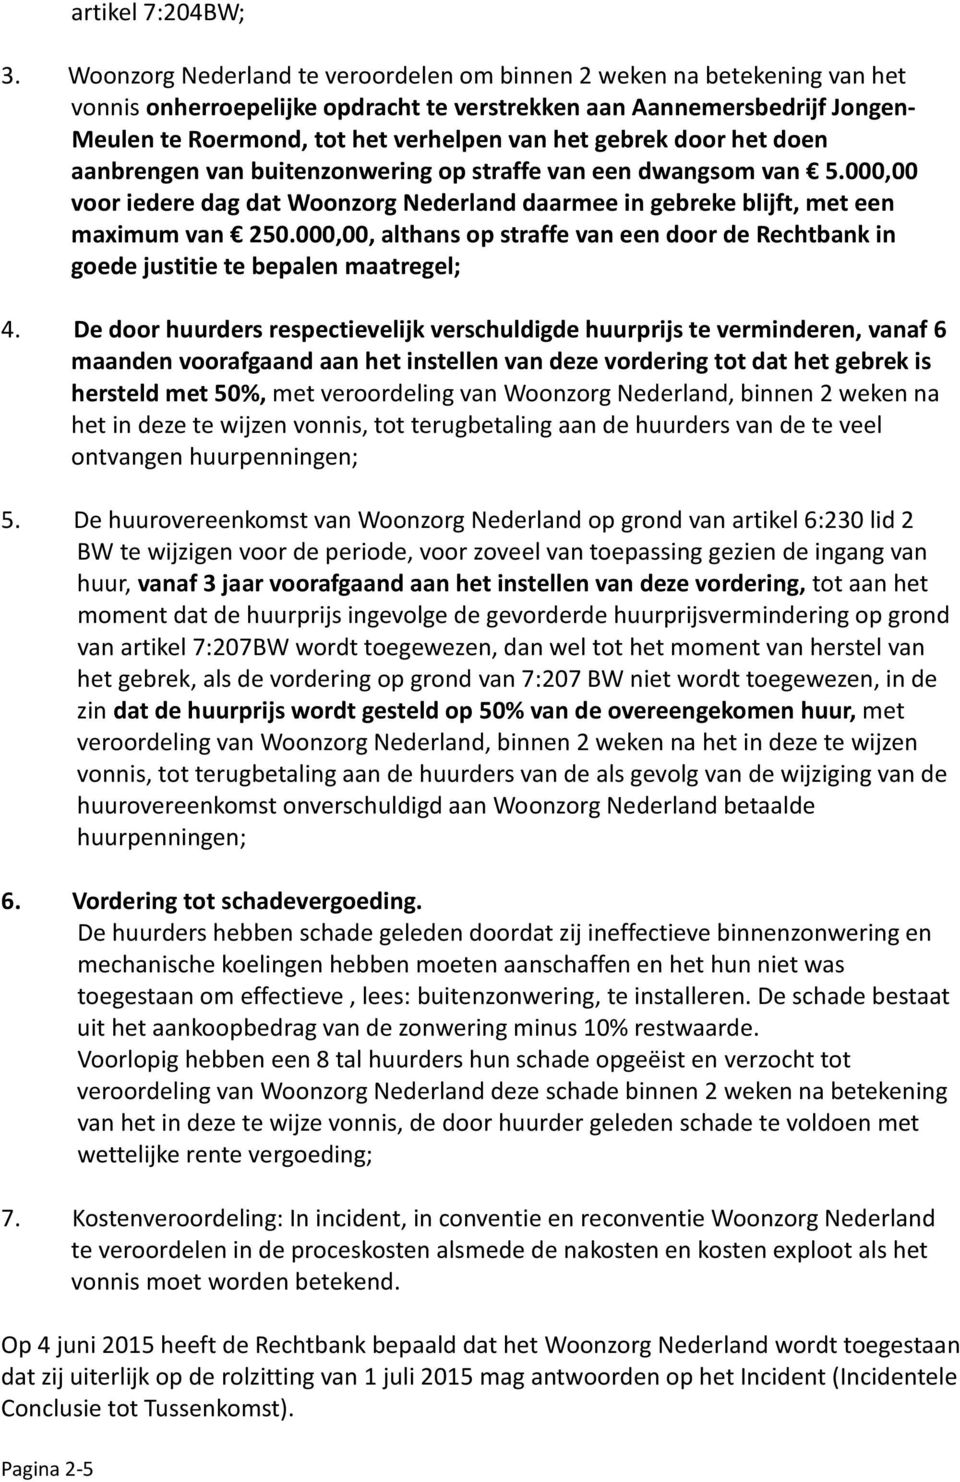 gebrek door het doen aanbrengen van buitenzonwering op straffe van een dwangsom van 5.000,00 voor iedere dag dat Woonzorg Nederland daarmee in gebreke blijft, met een maximum van 250.